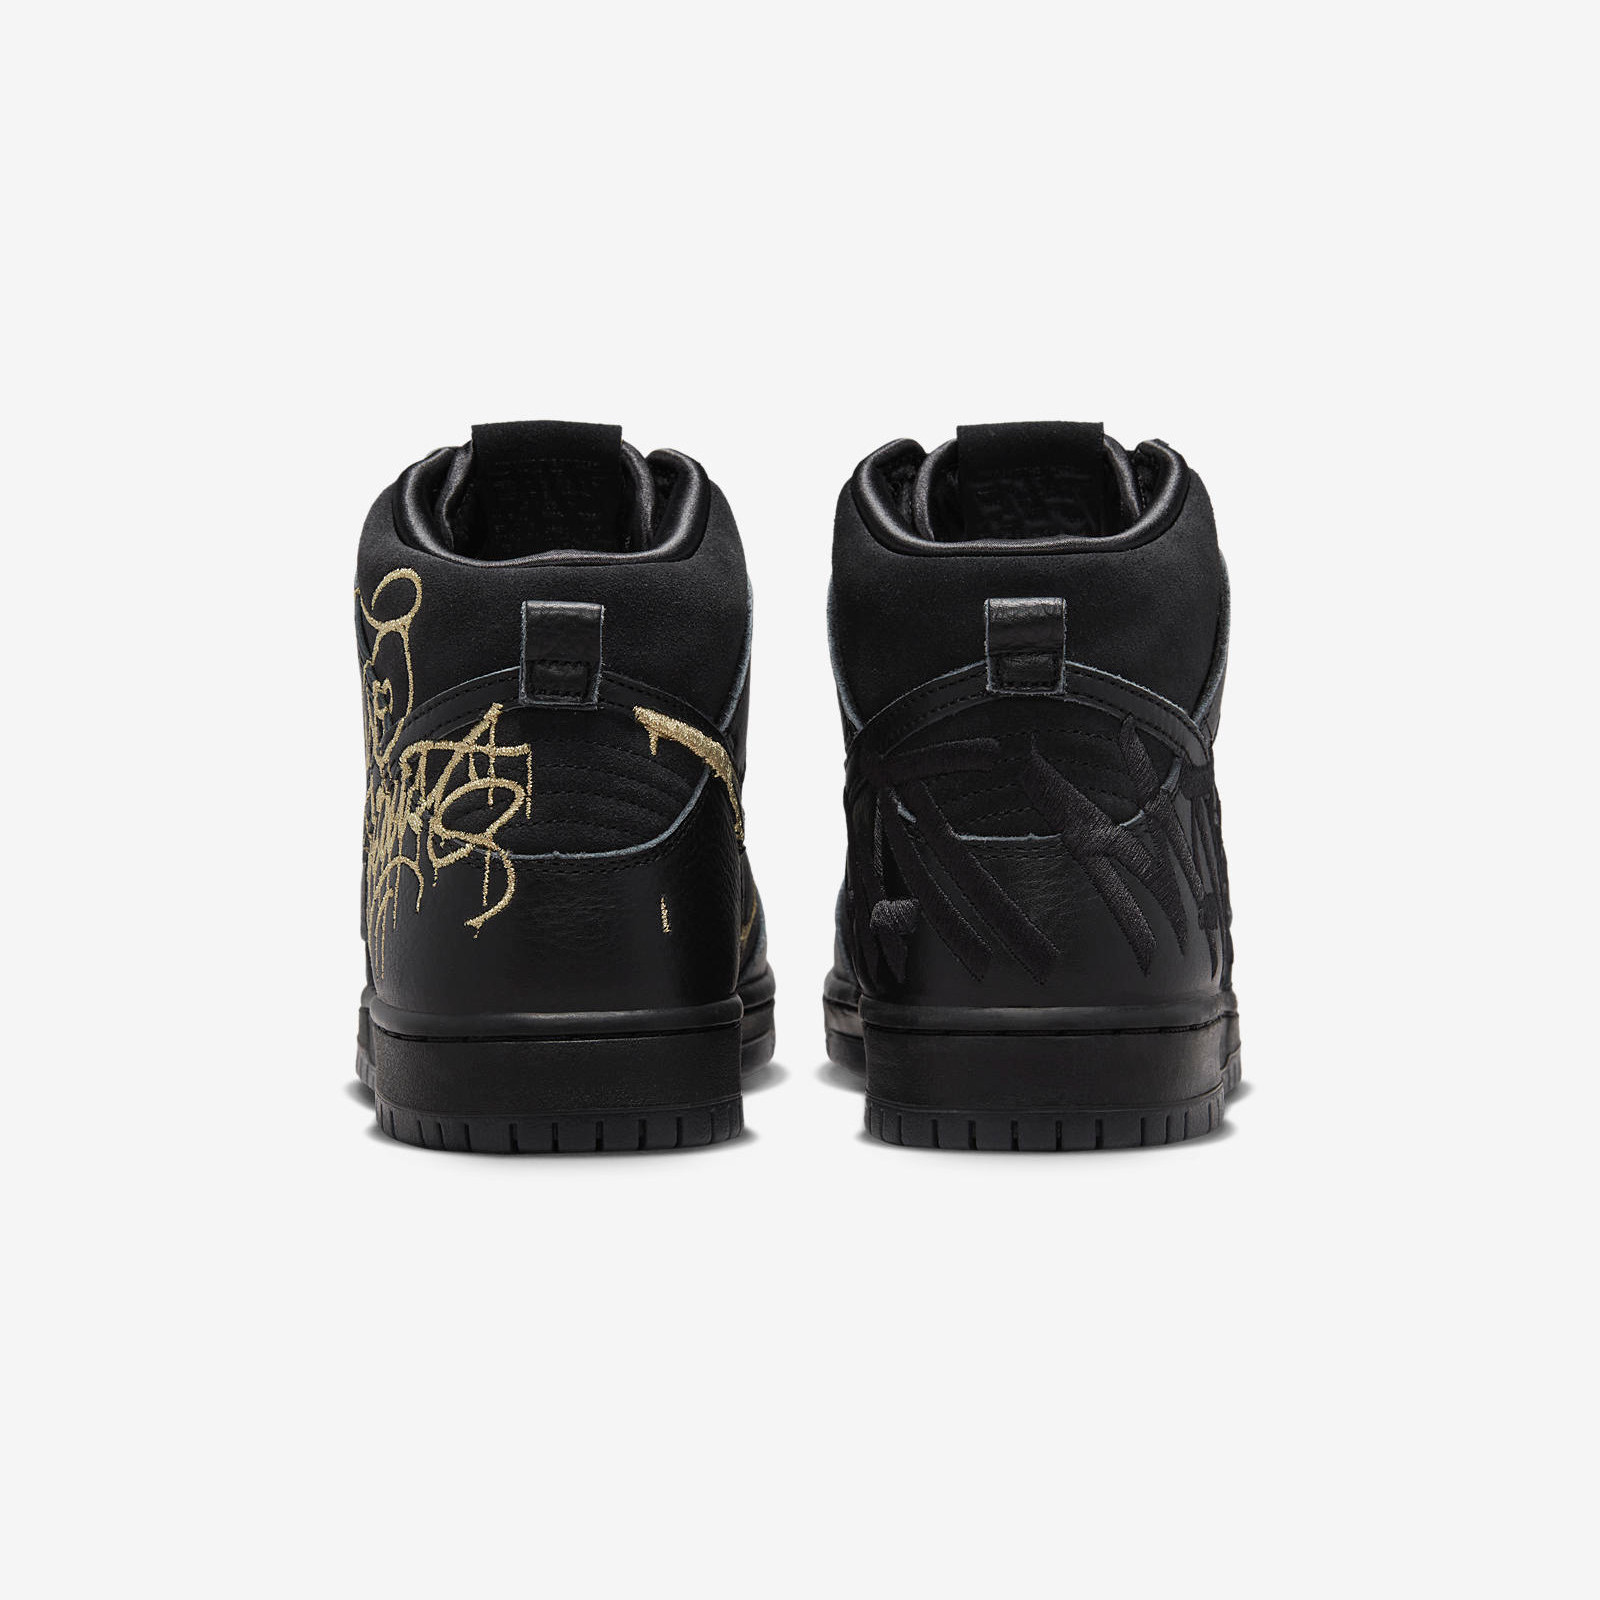 FAUST x Nike SB
Dunk High
Black / Gold